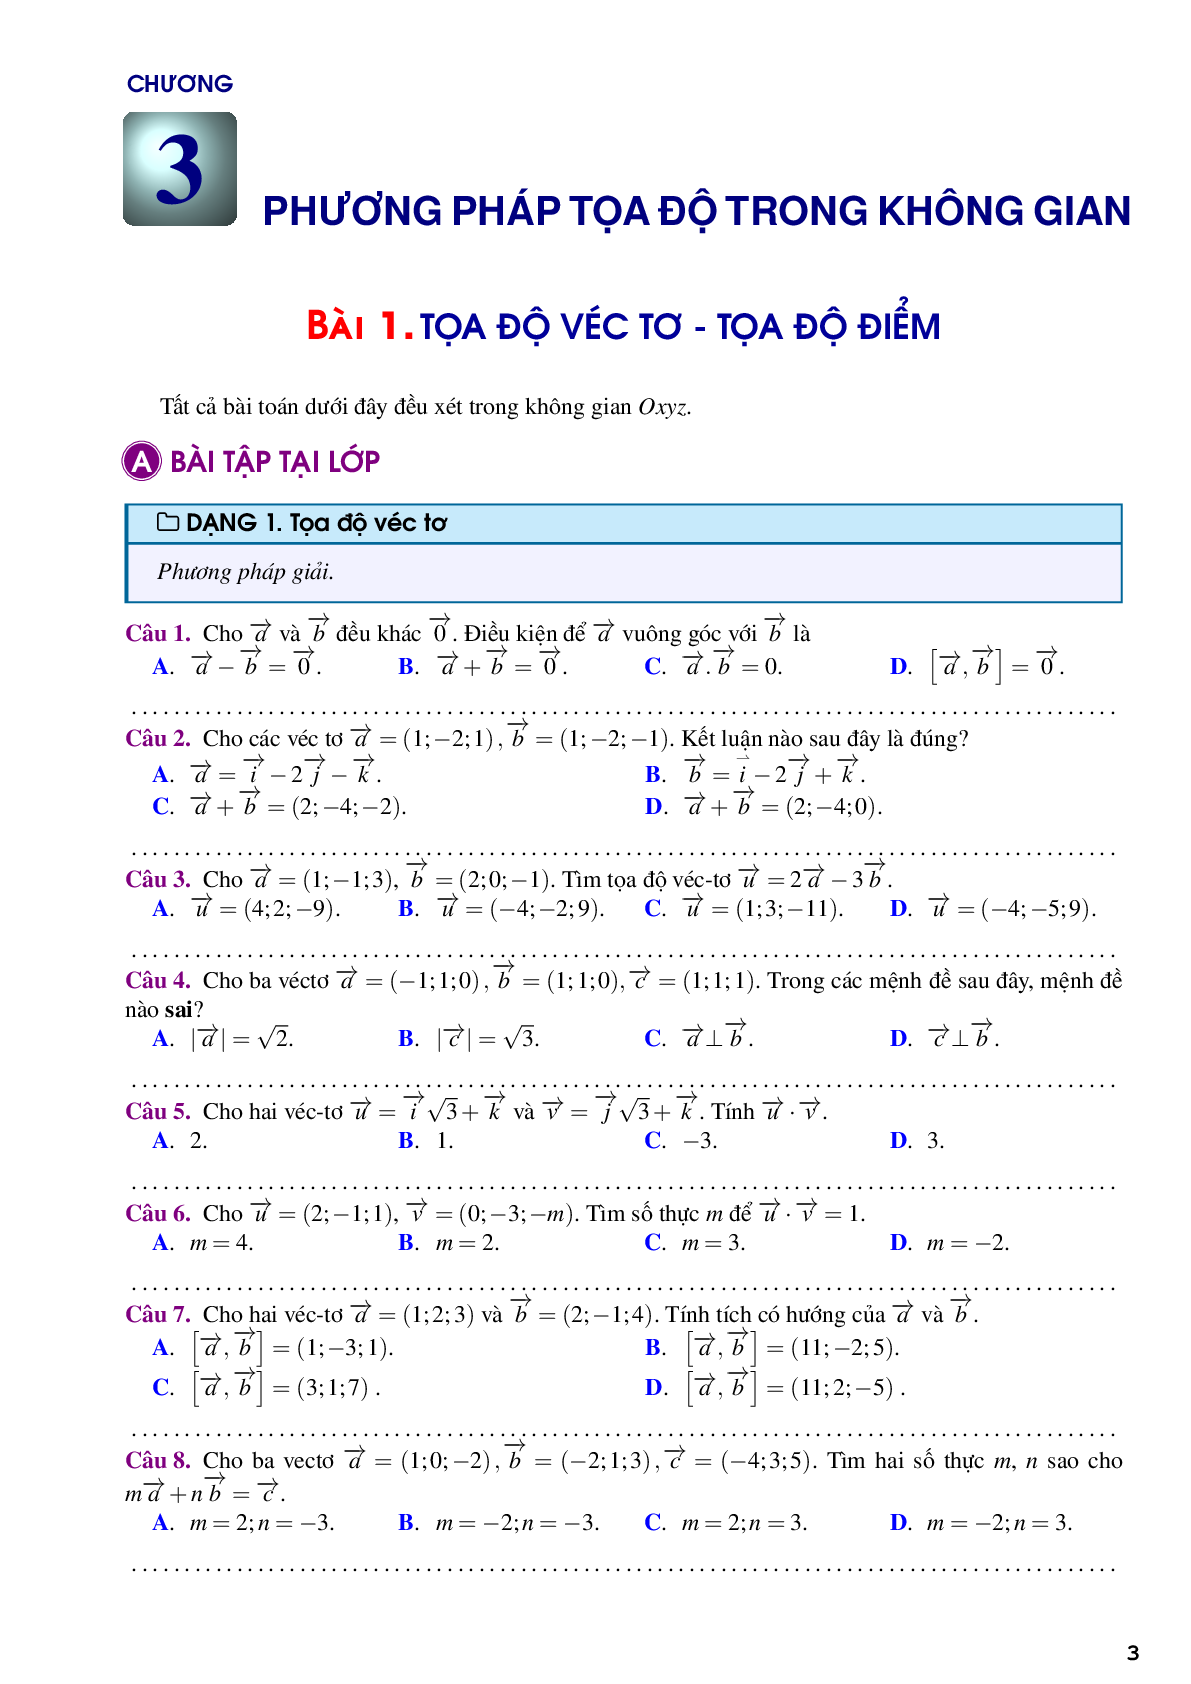 Bài tập trắc nghiệm về phương pháp tọa độ trong không gian (trang 3)